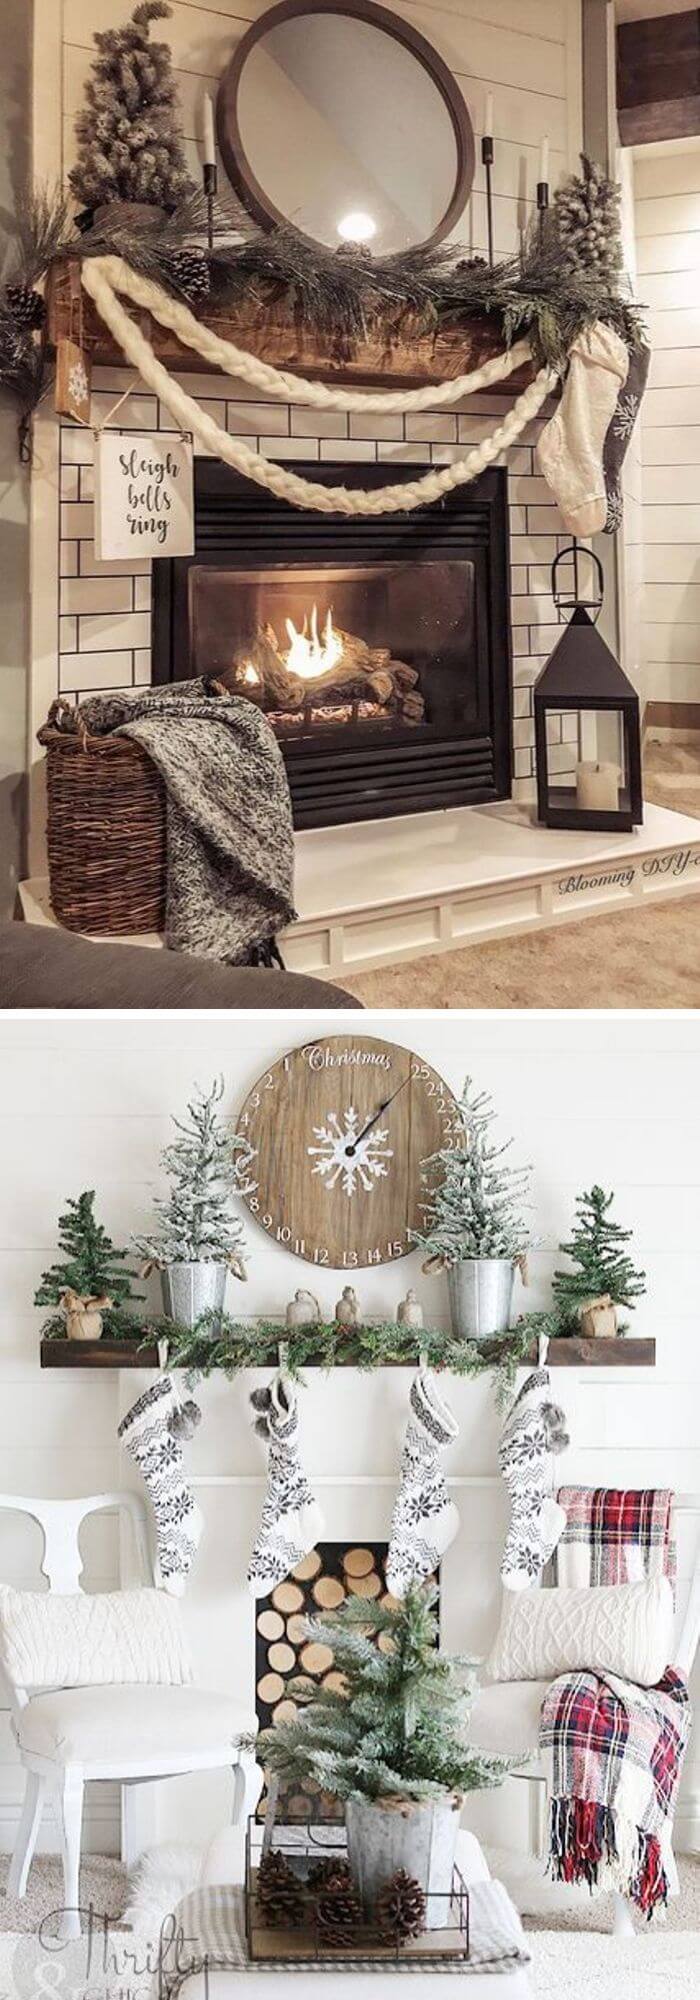 10 farmhouse winter decor ideas fireplace